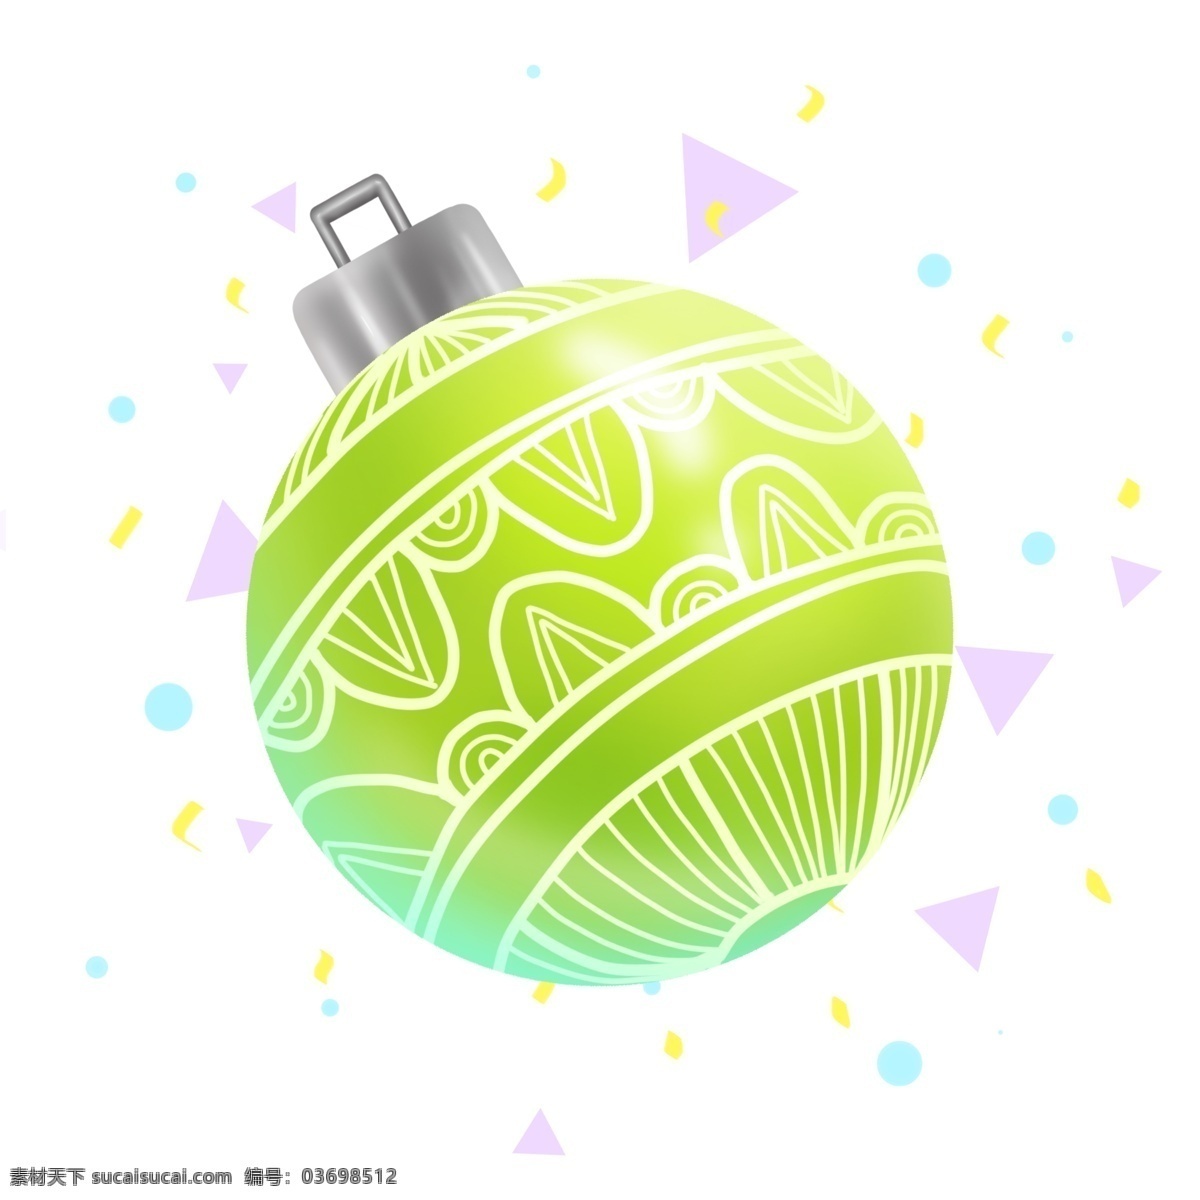 商用 手 账 圣诞节 圣诞树 绿装 饰 球 节日 装饰 元素 绿色 花纹 金属 装饰球 手账 节日元素 漂浮物